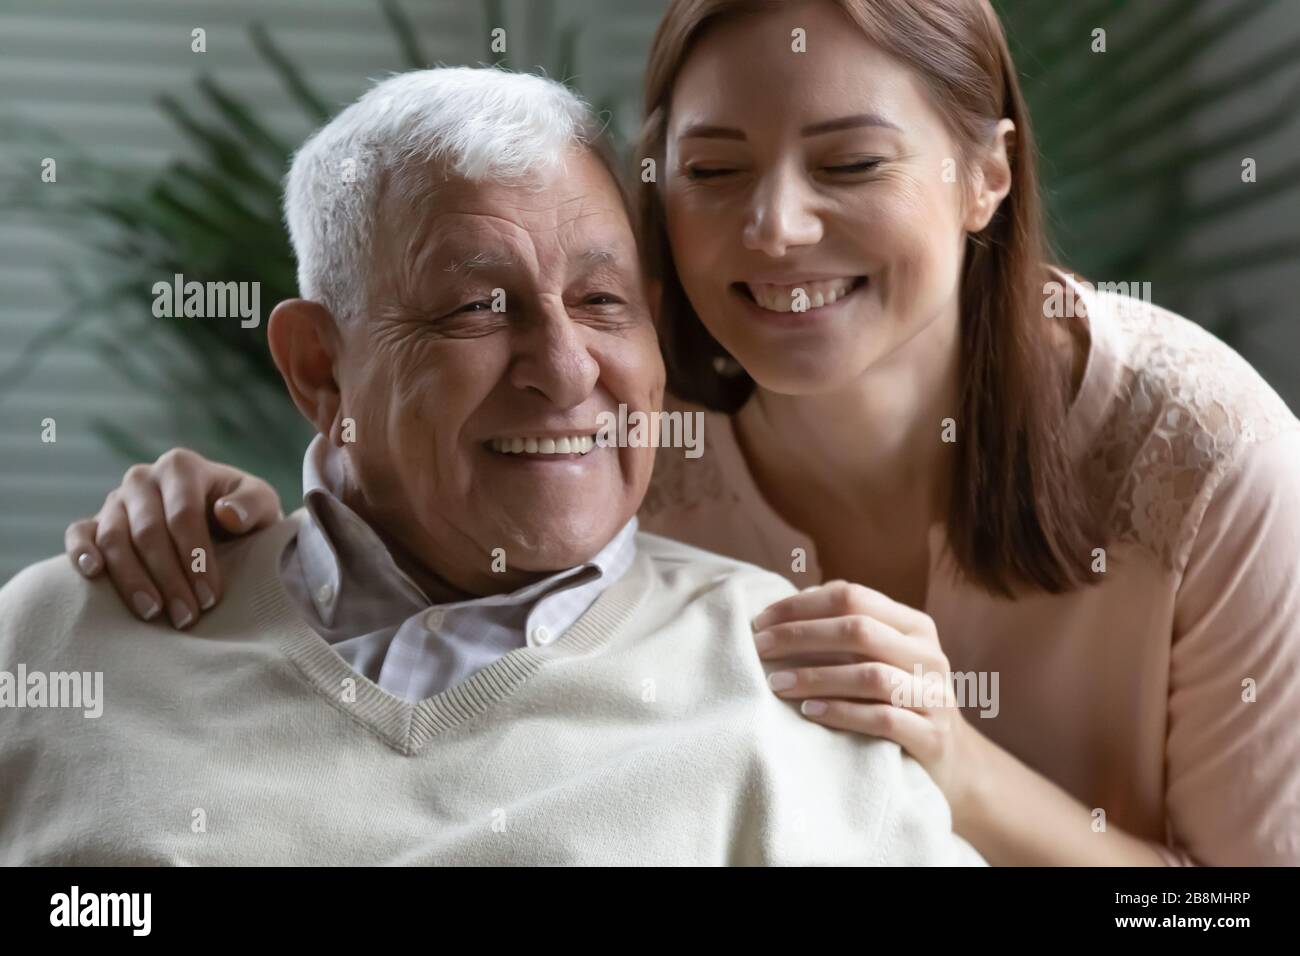 Immagine closeup candid cresciuto figlia abbracci padre anziano Foto Stock